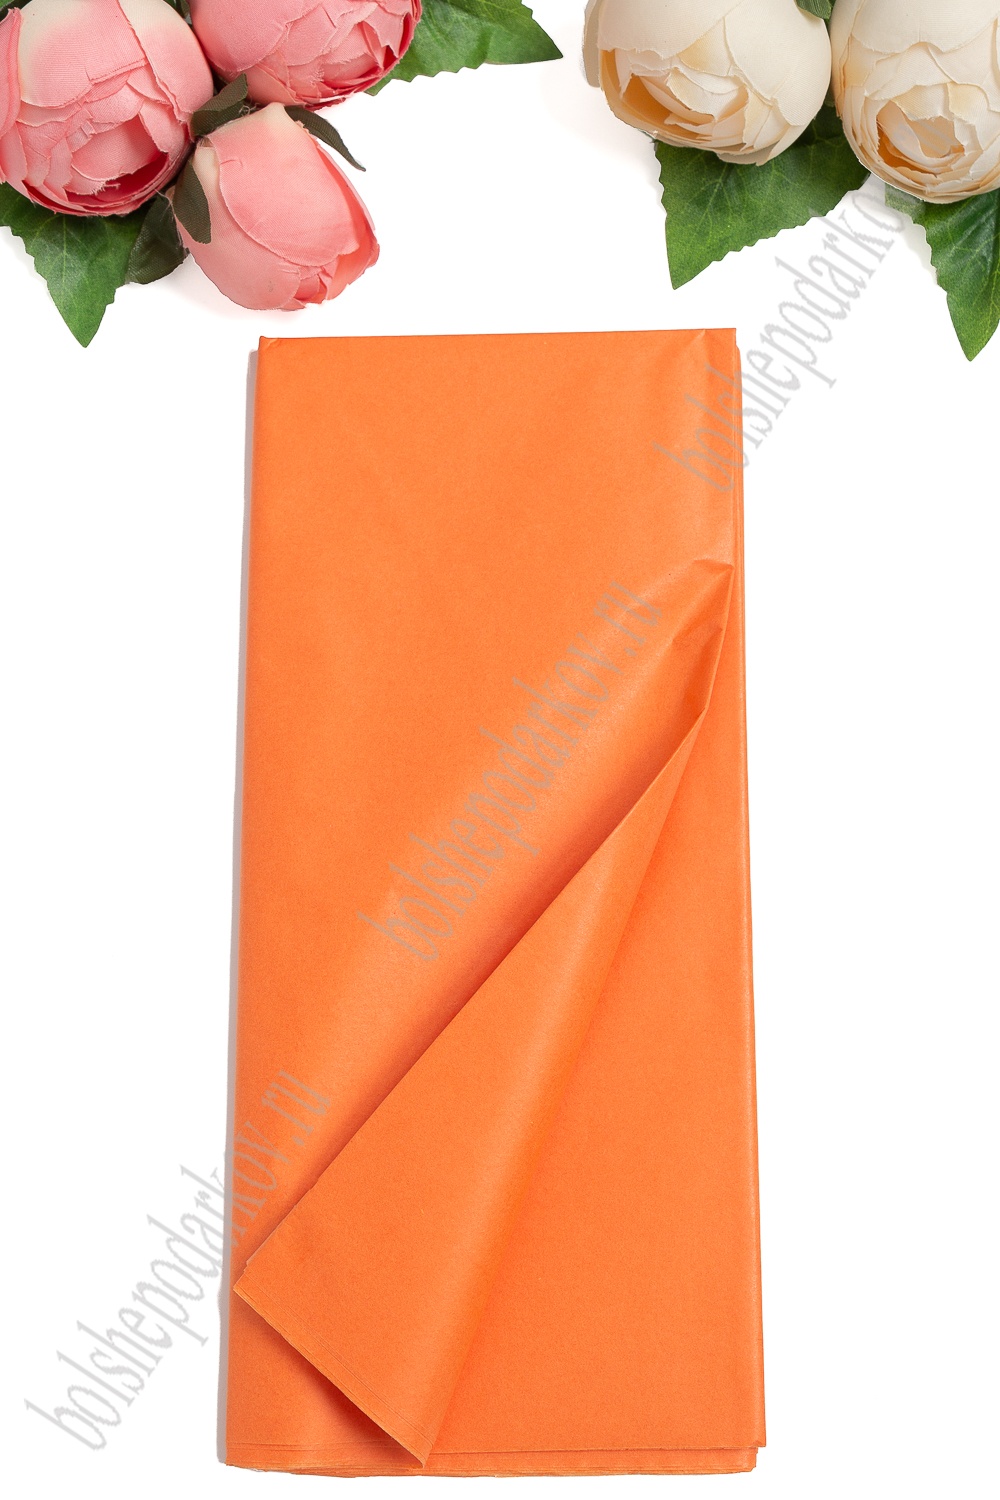 Бумага тишью 50*66 см (10 листов) SF-914, оранжевый №123